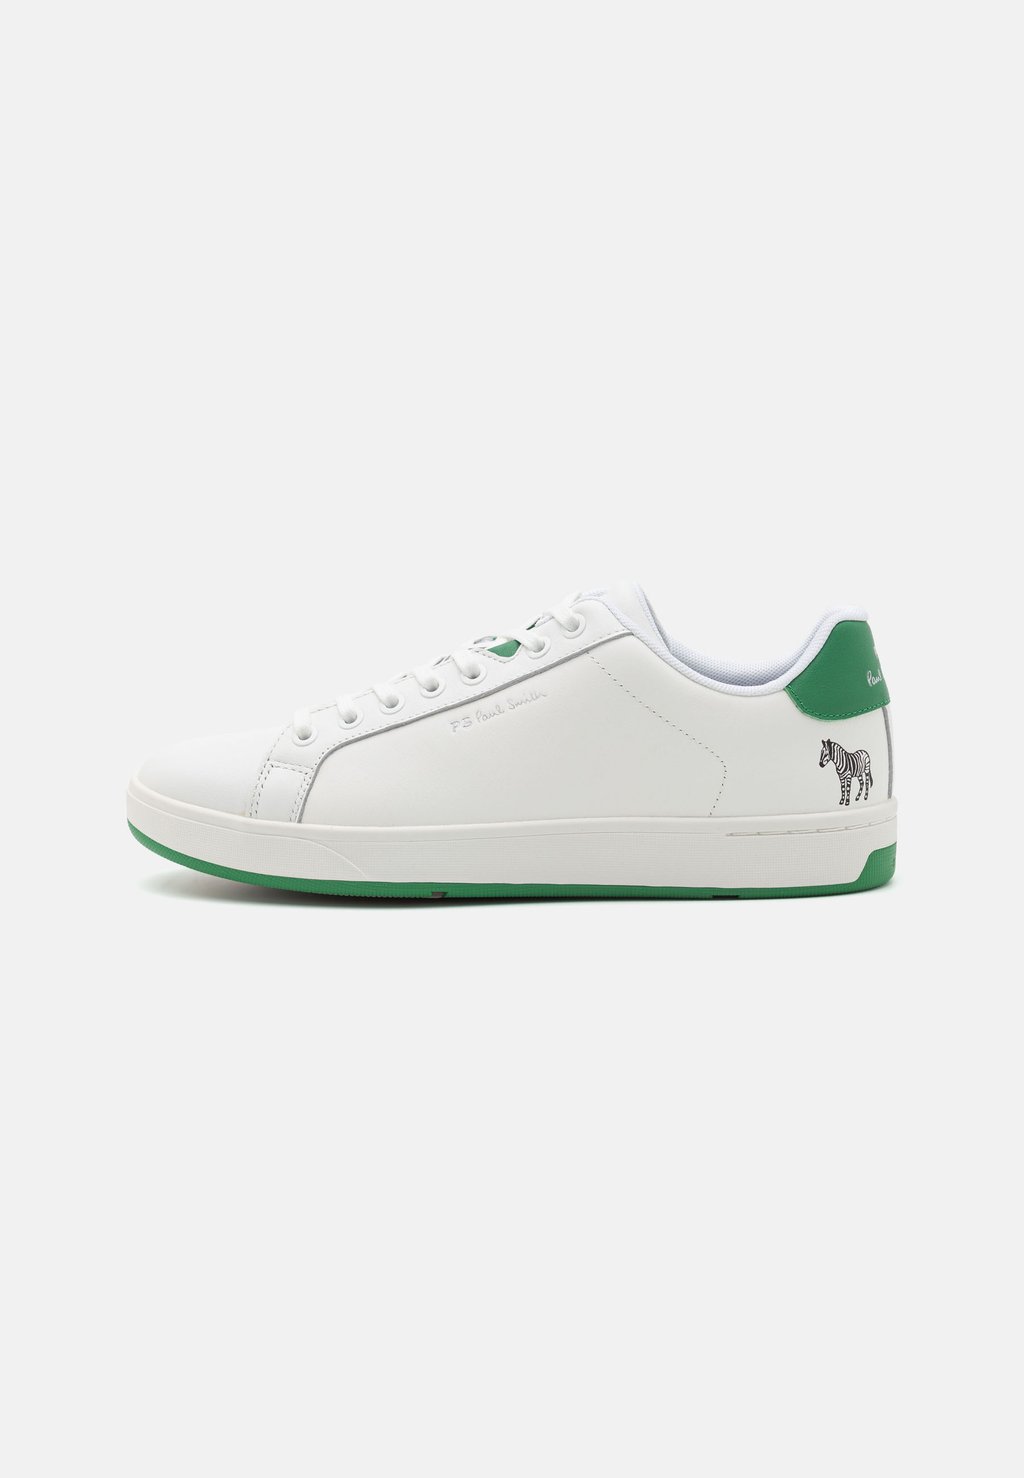 Низкие кроссовки Albany Spoiler PS Paul Smith, цвет white/green кроссовки paul green zapatillas white